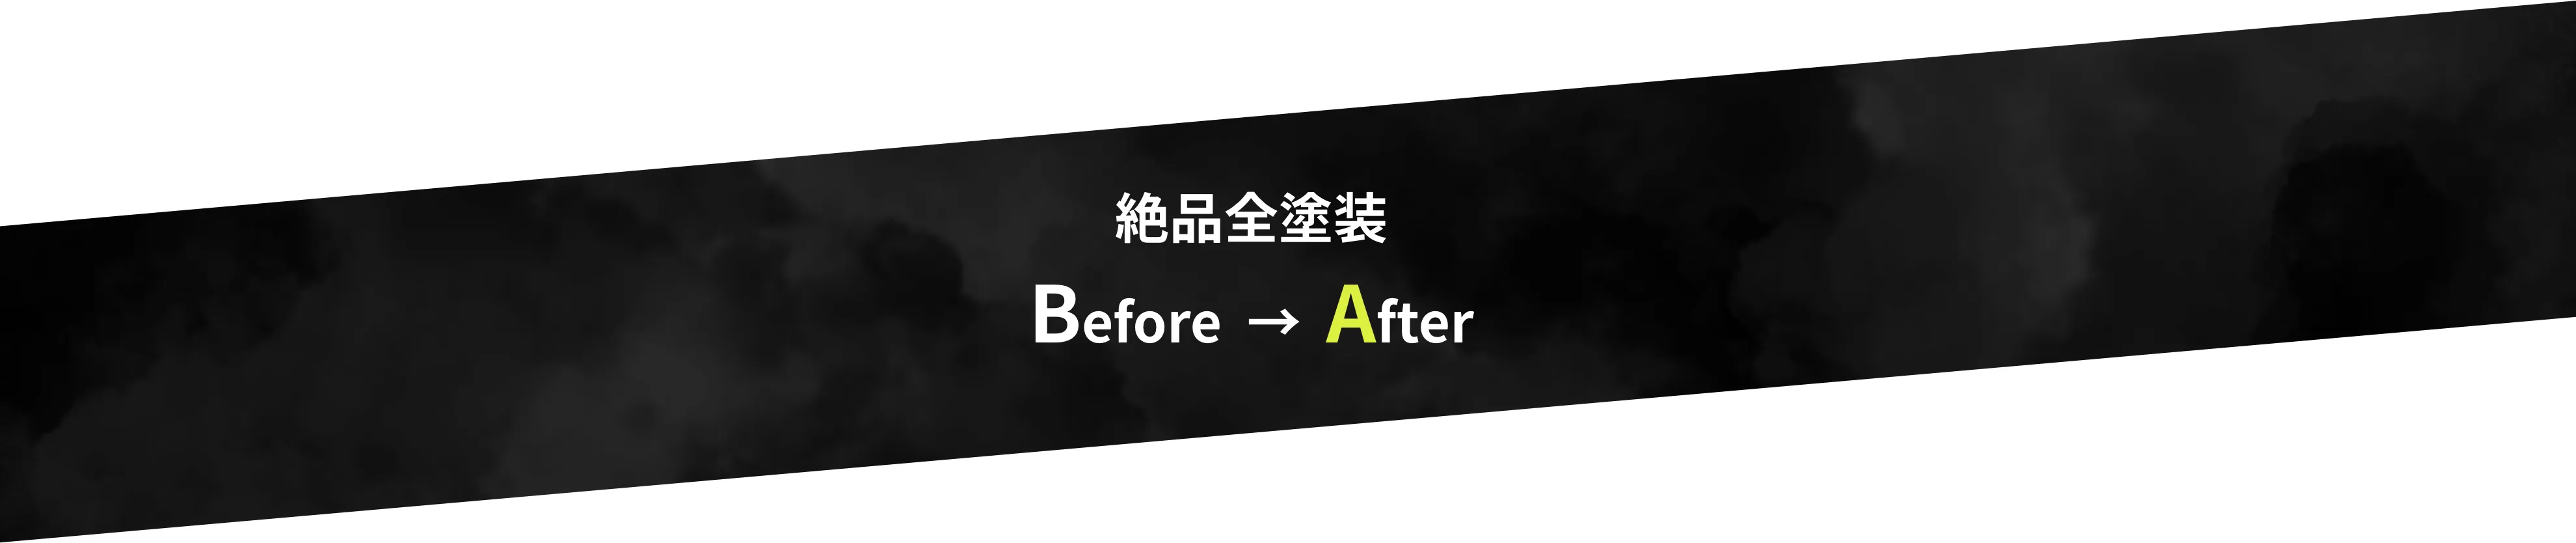 絶品全塗装 Before  →  After